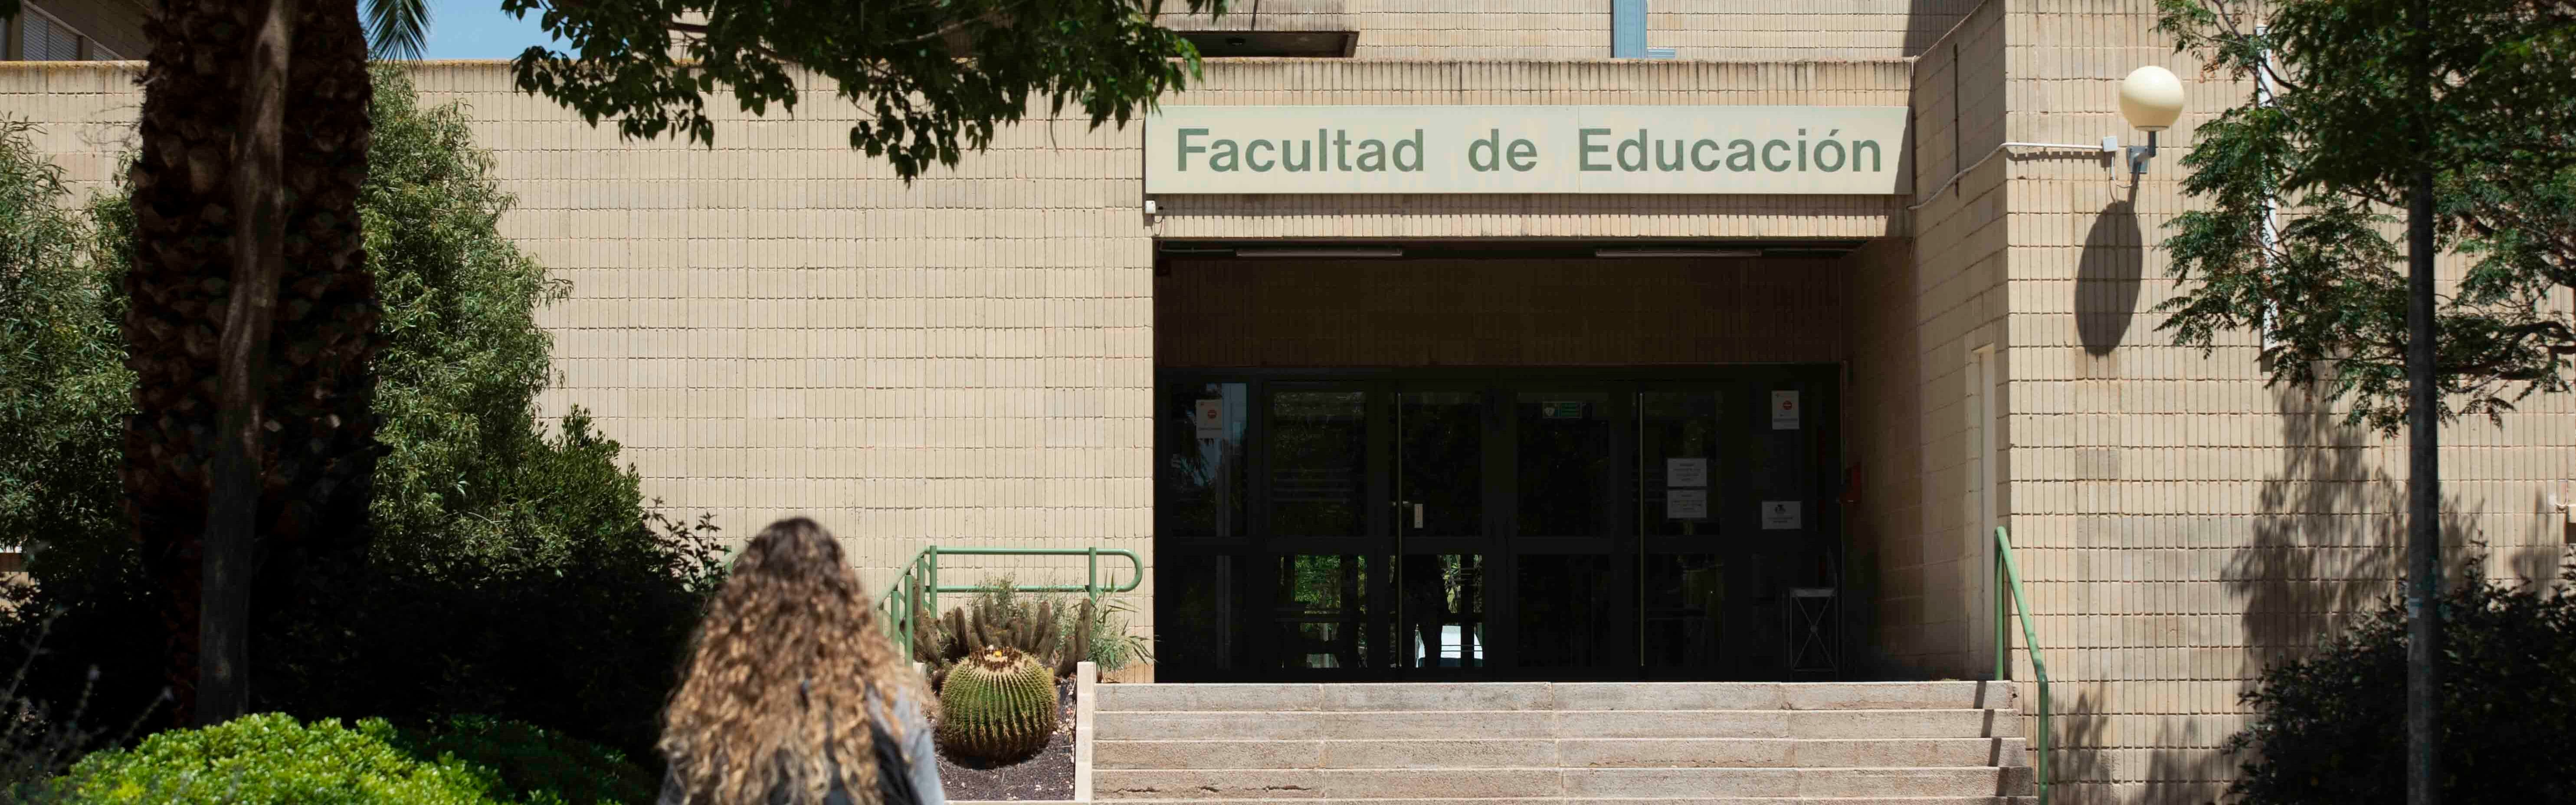 Nota de prensa - El II Congreso de Innovación reunirá el próximo lunes las iniciativas docentes más destacadas de la Universidad de Murcia